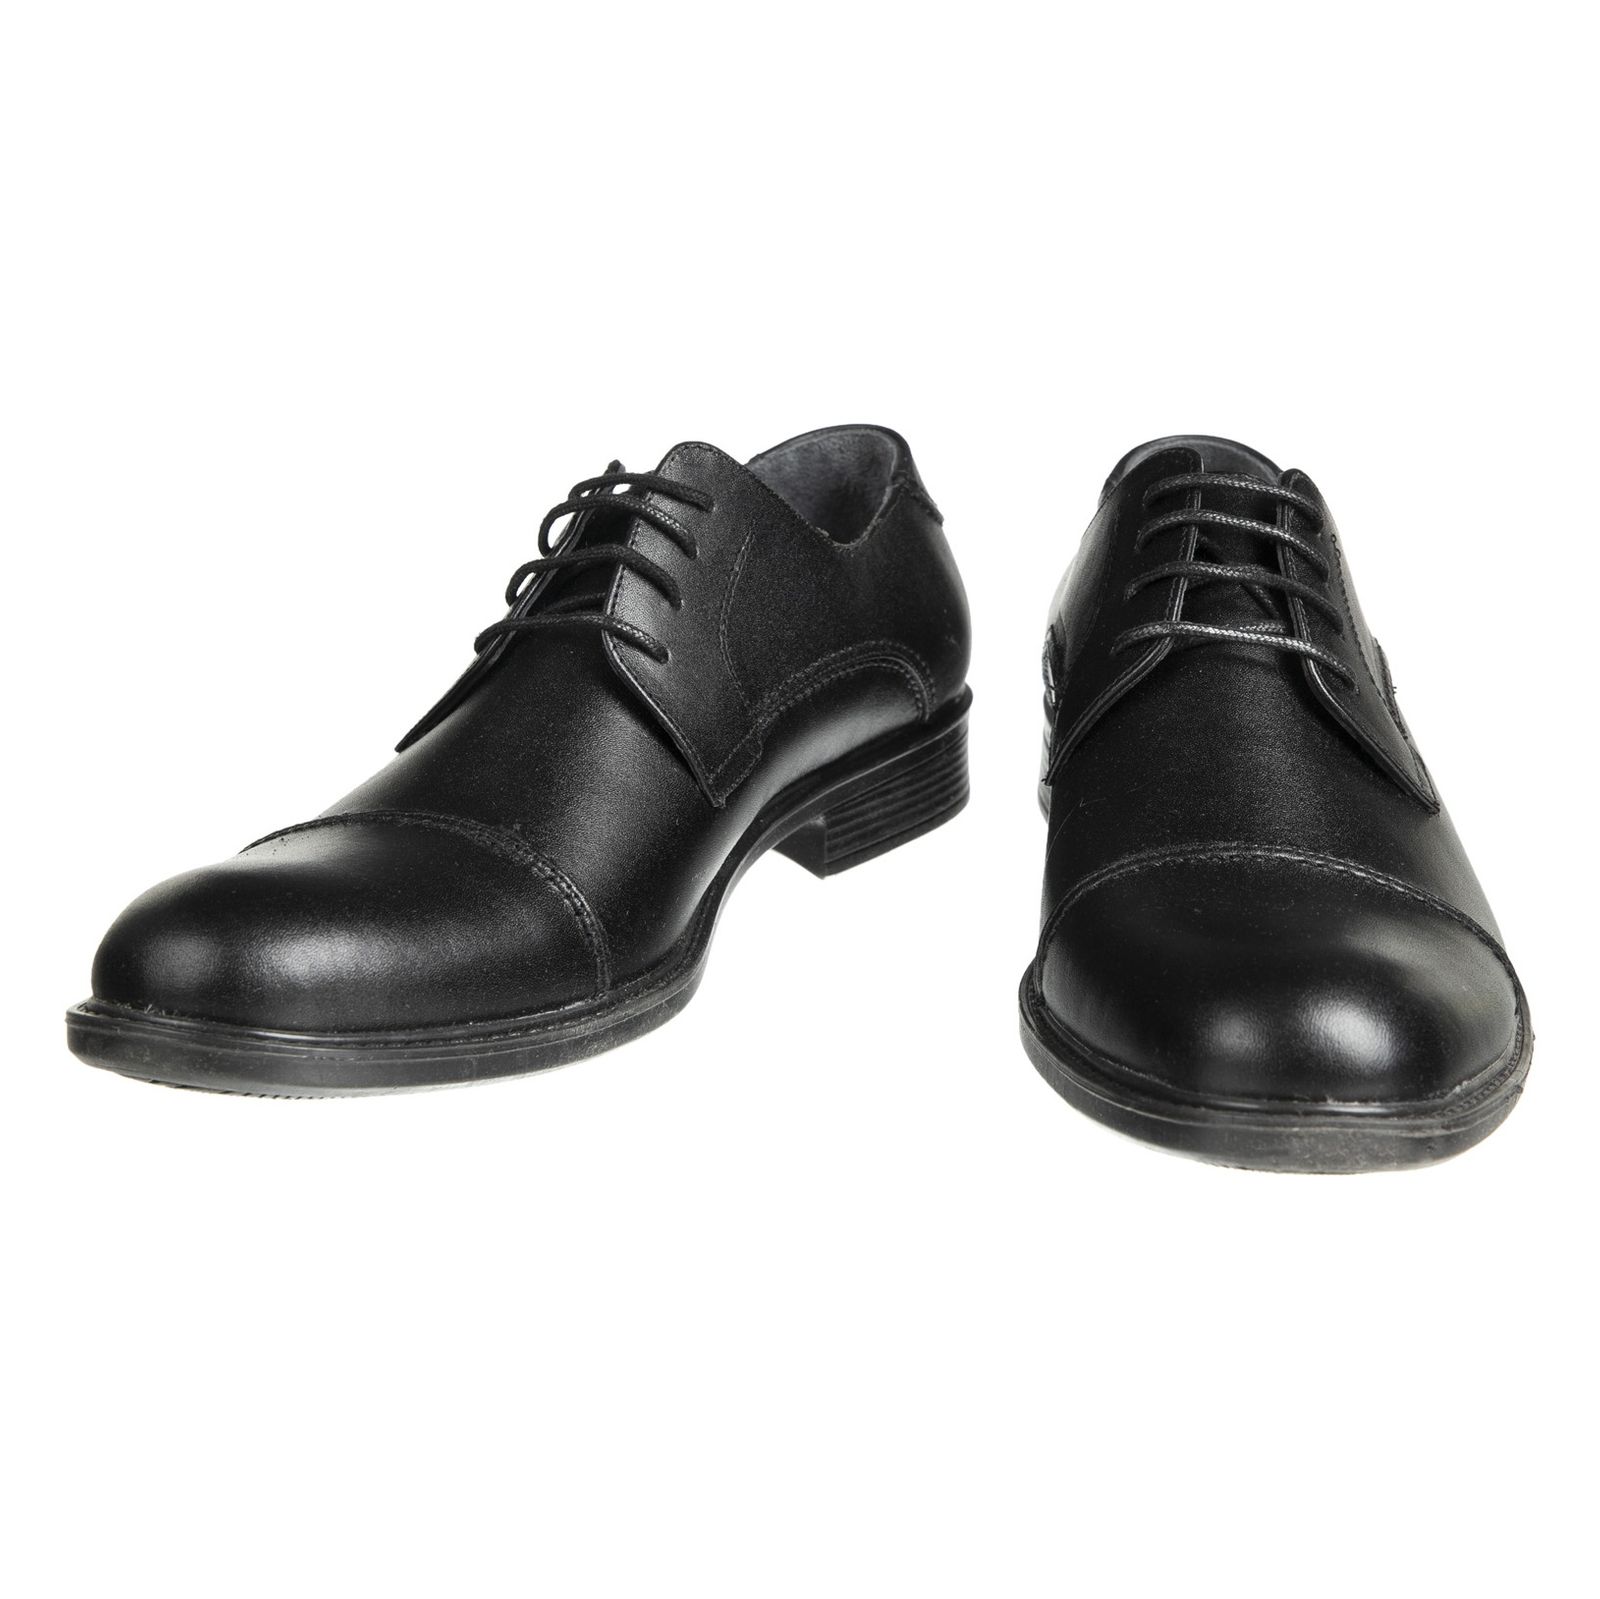 کفش مردانه دلفارد مدل 7219j503-101 - مشکی - 4